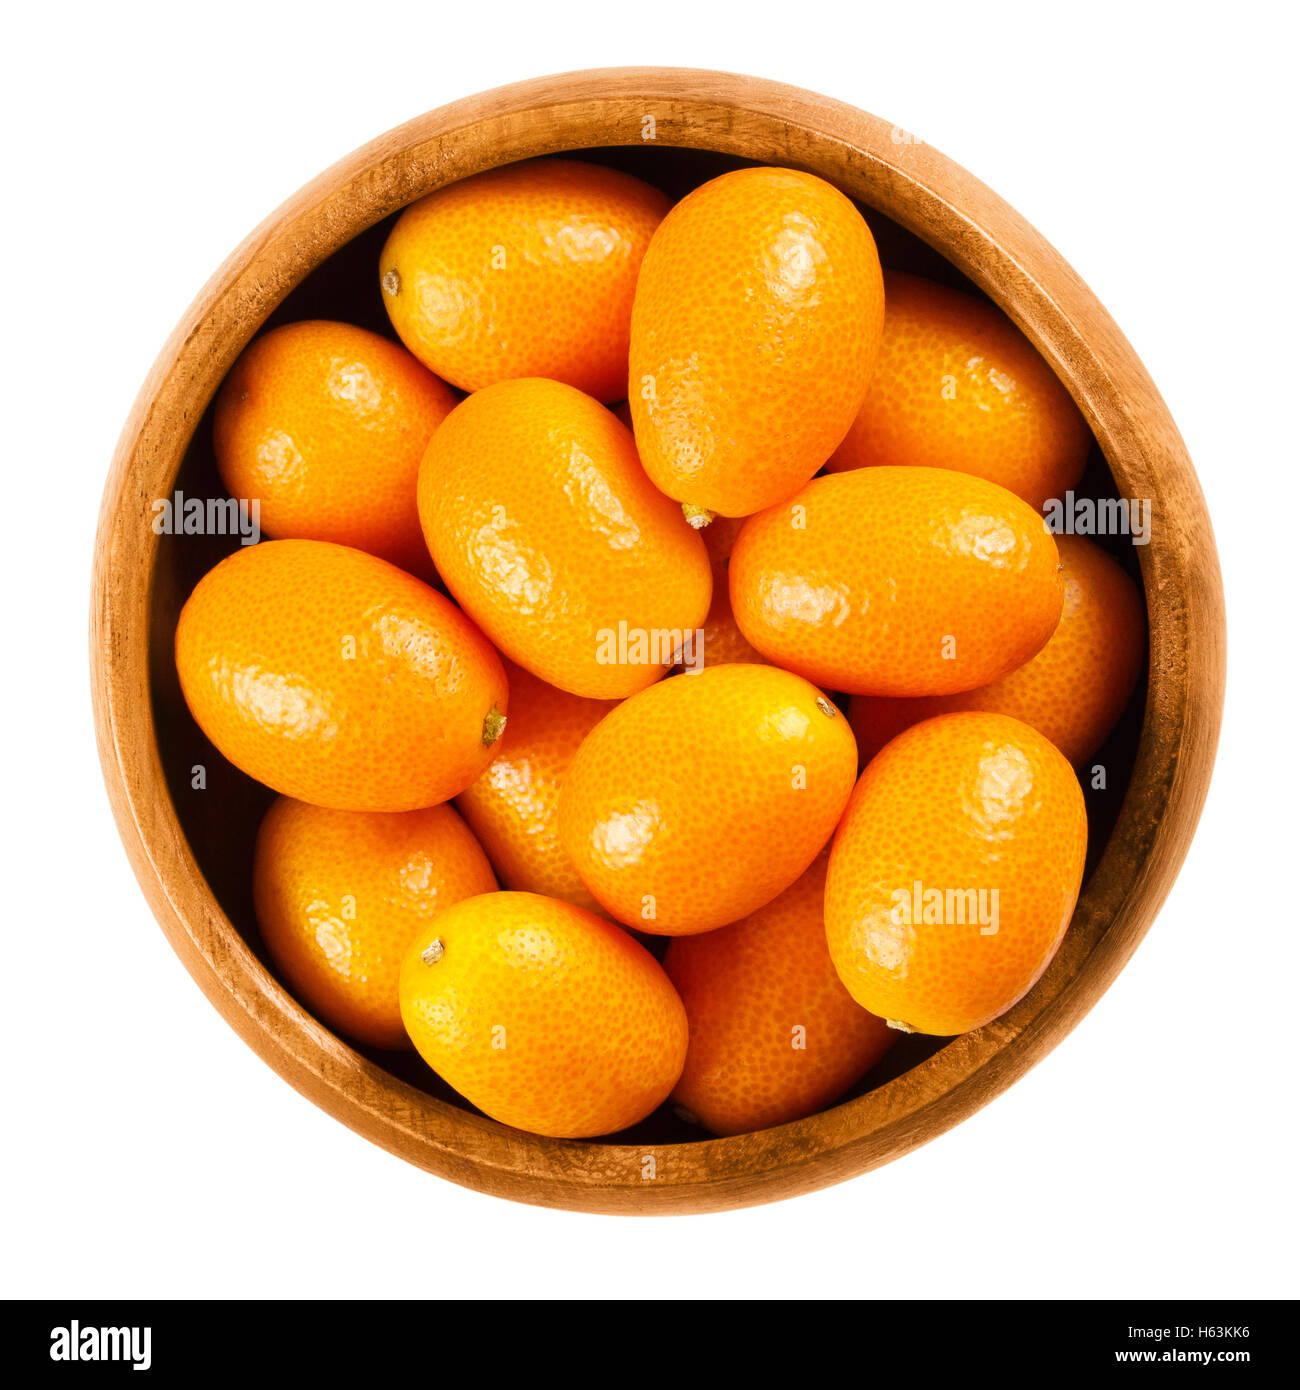 Les kumquats frais dans un bol en bois sur fond blanc, également appelé cumquats et kumquat Nagami. Petits fruits comestibles orange ovale. Banque D'Images